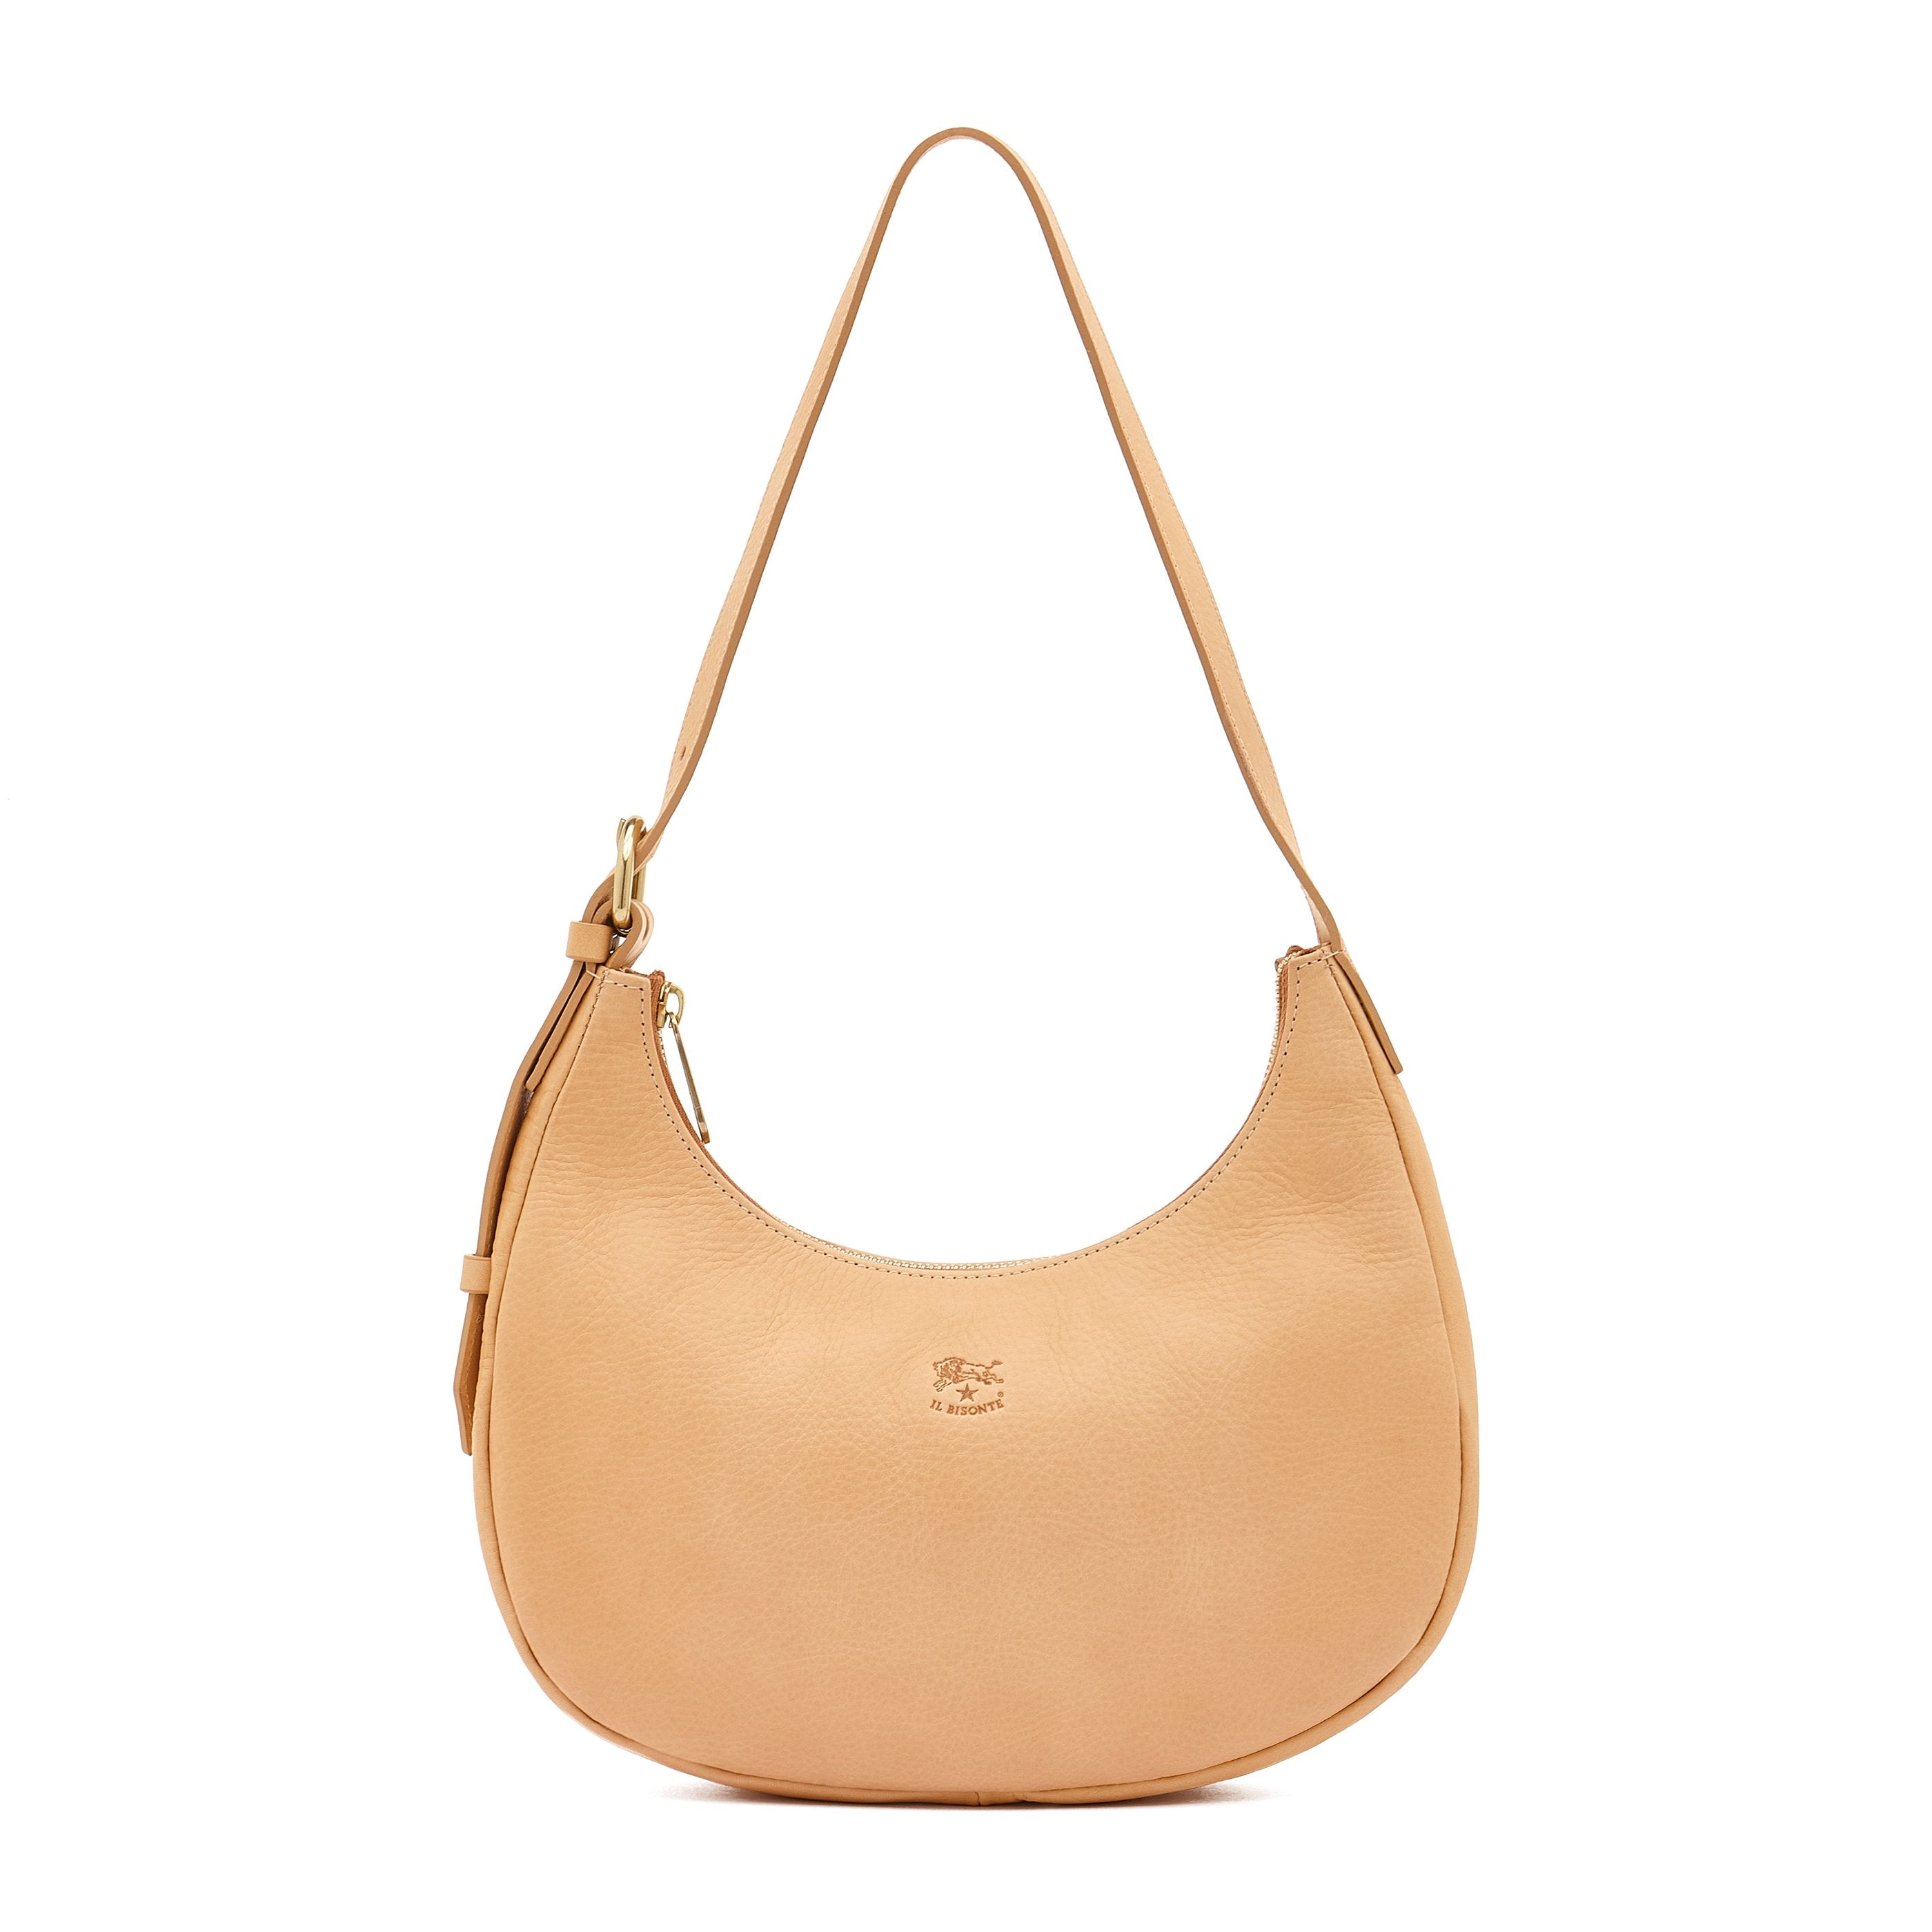 Belcanto | Women's shoulder bag in leather color natural